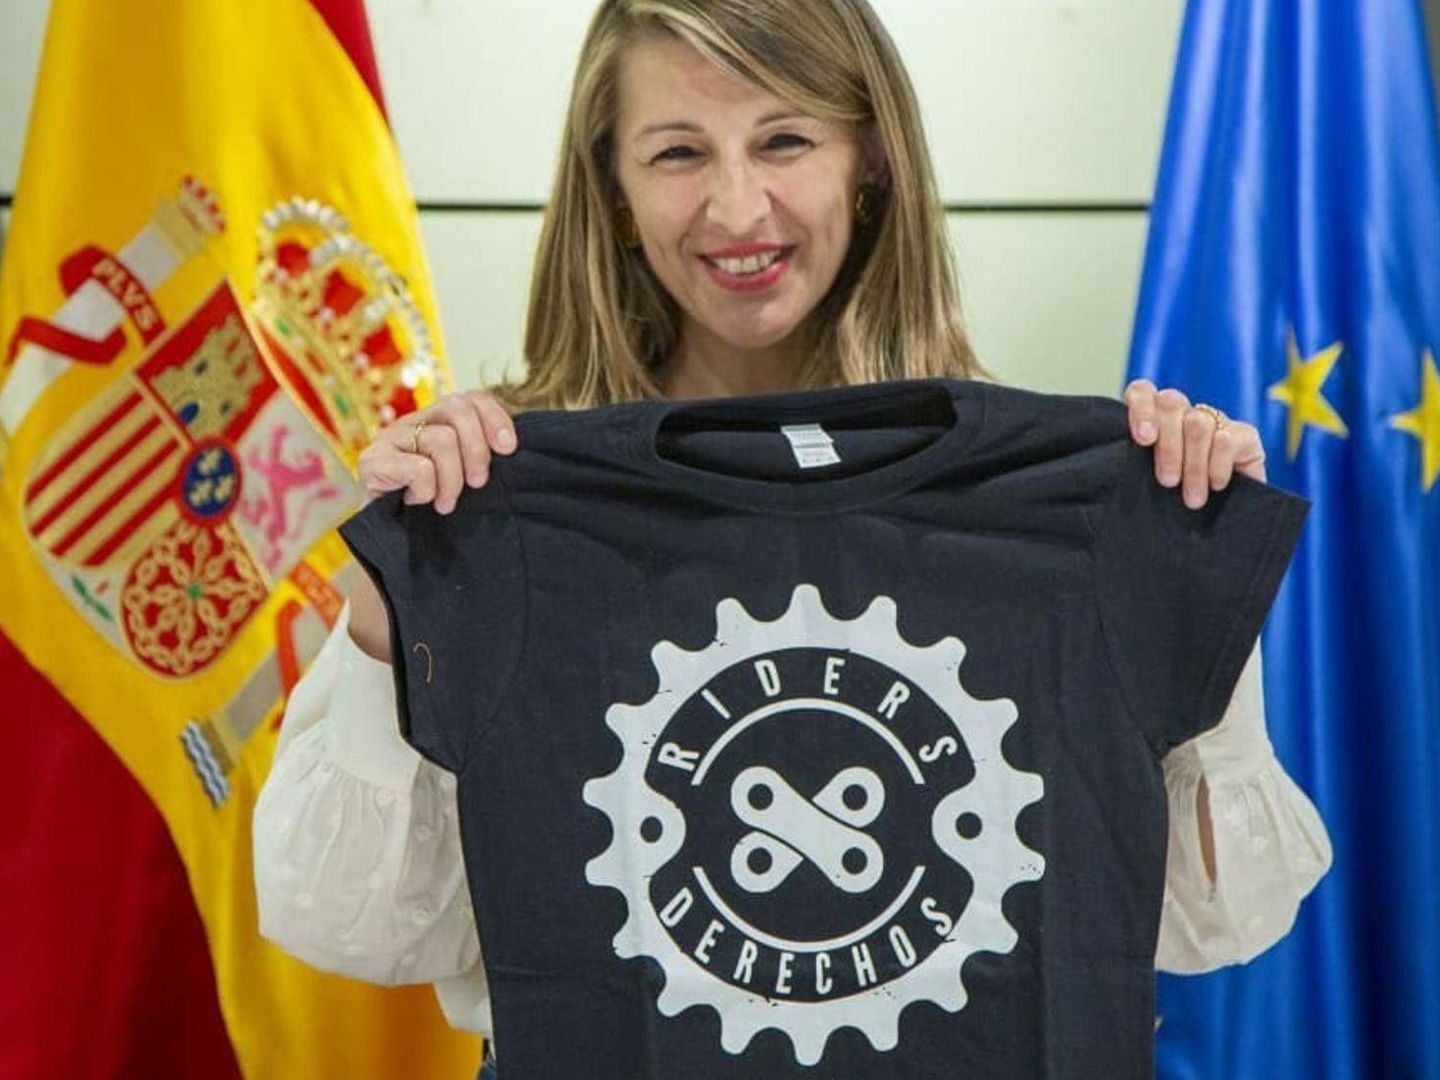 La ministra de Trabajo, Yolanda Díaz, en la sede del ministerio el pasado 1 de junio con la camiseta de RidersXDerechos. (RidersXDerechos)